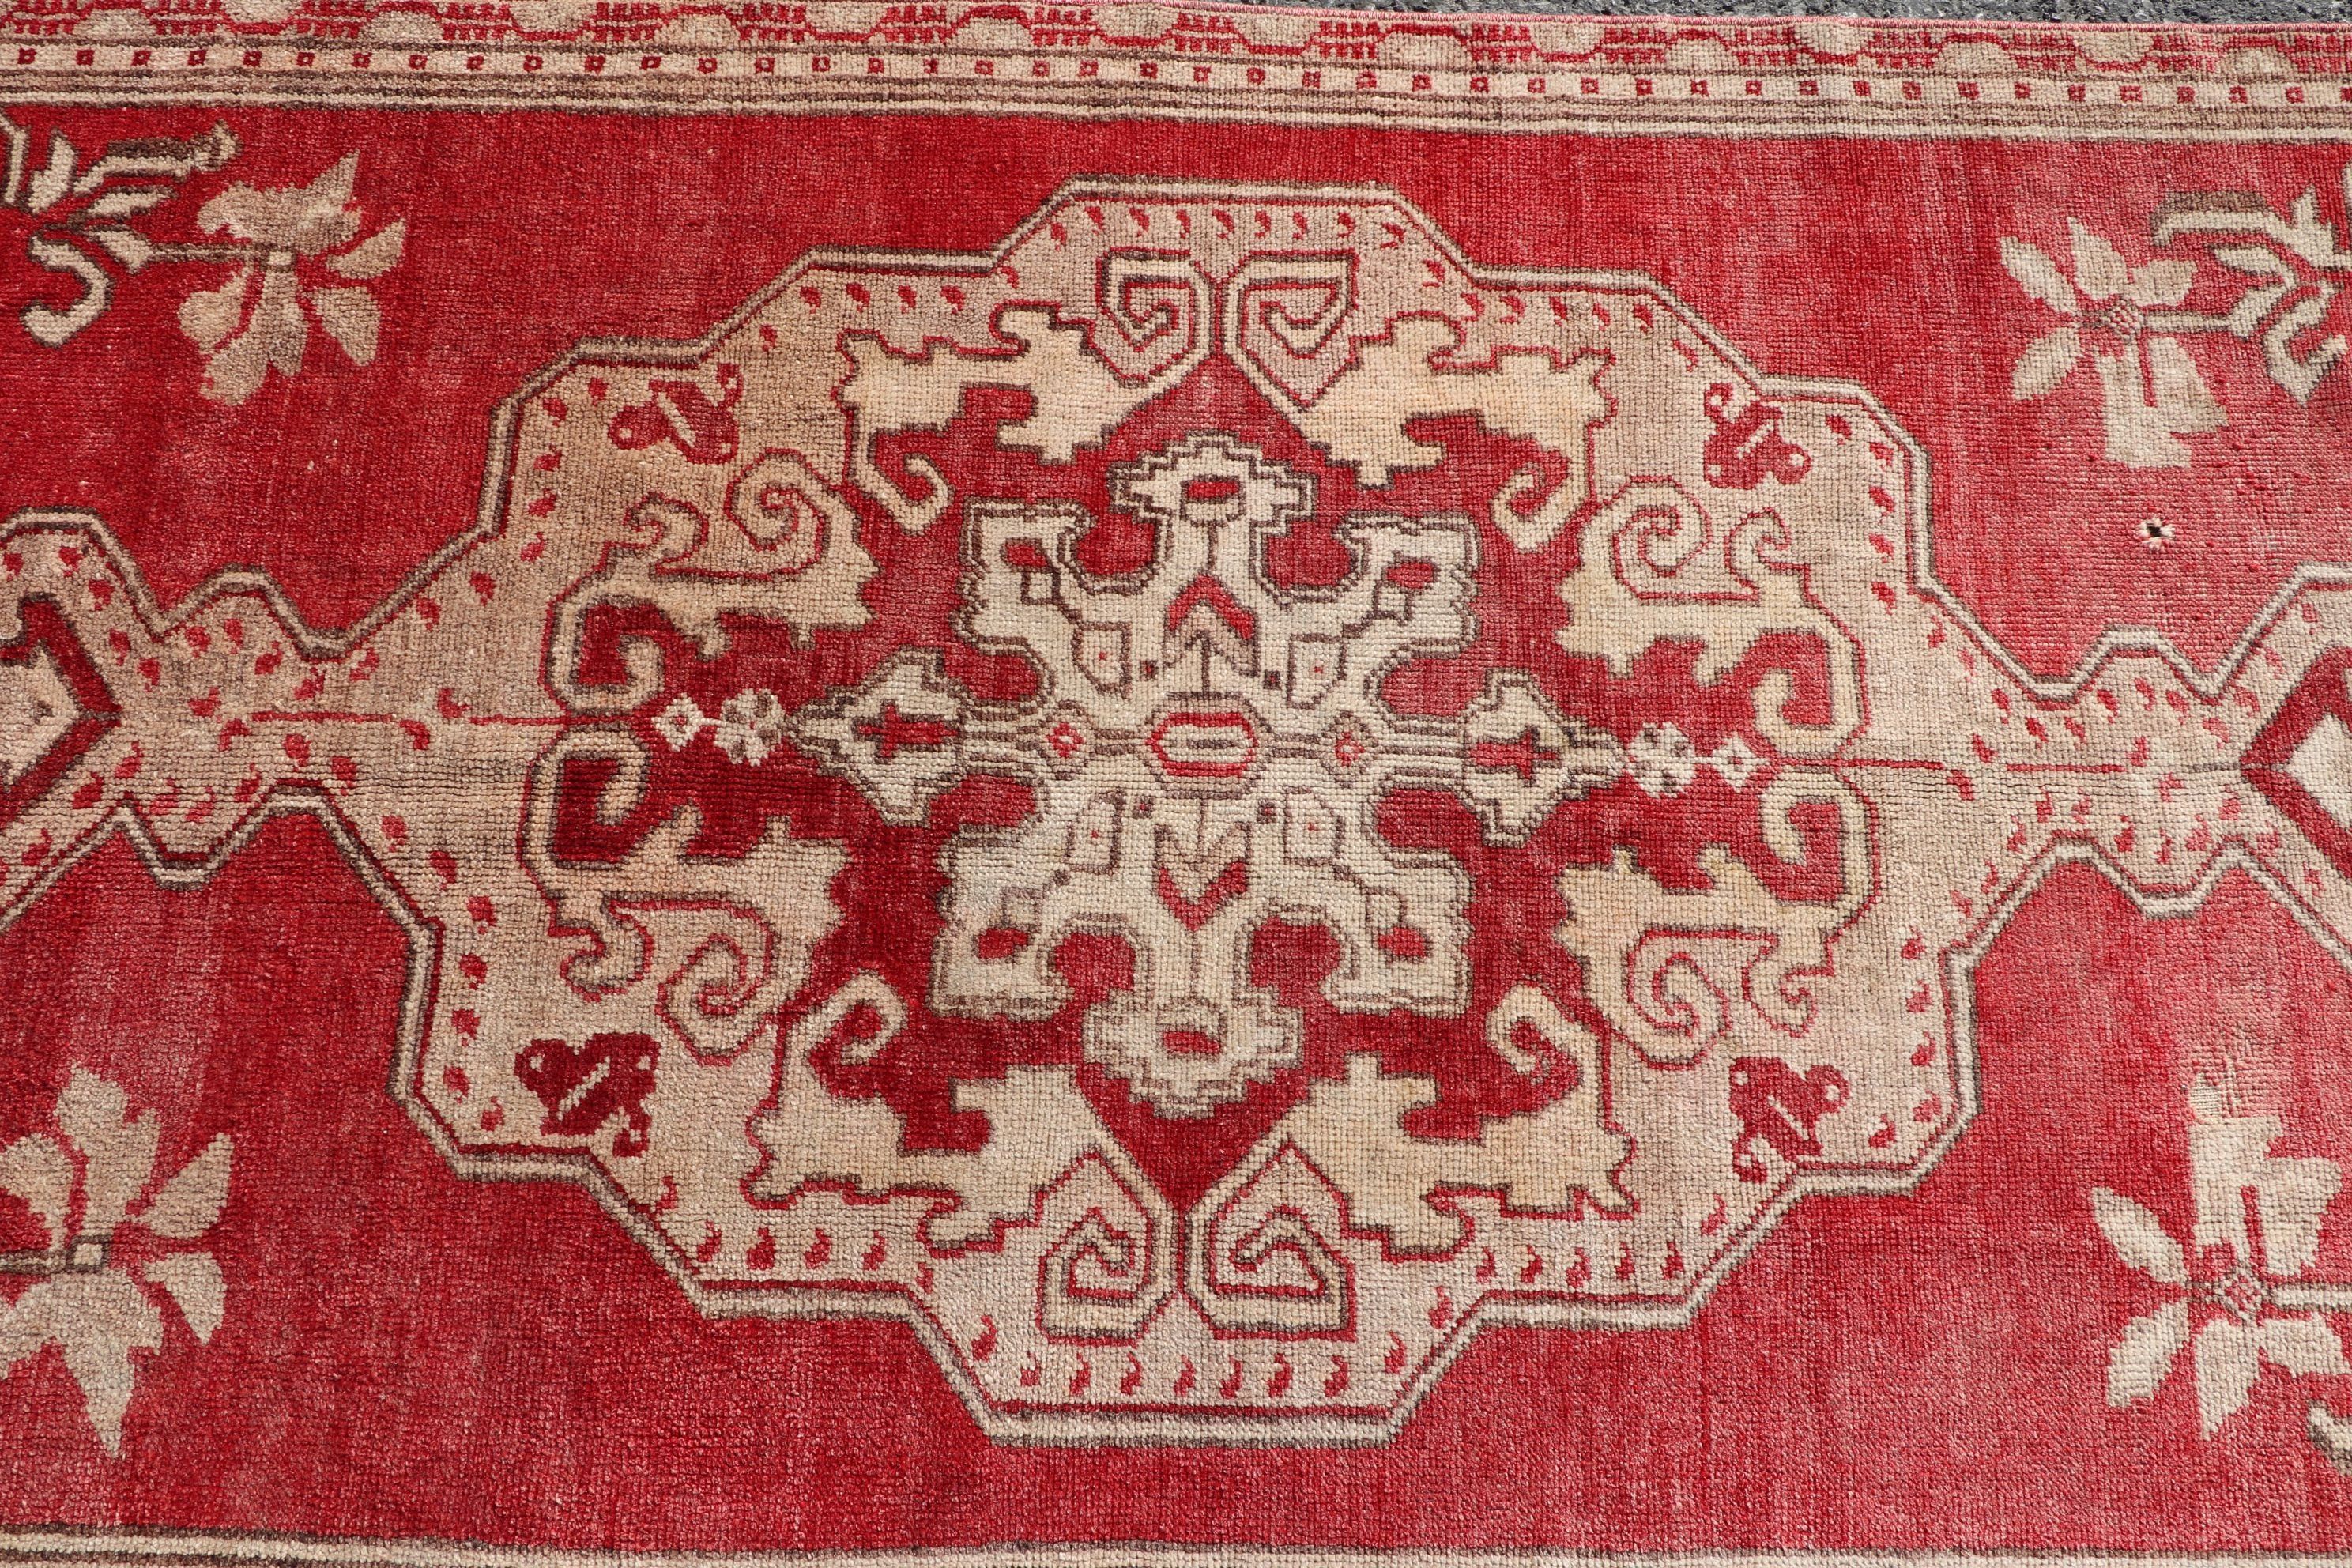 Vintage Rug, Rugs for Bedroom, Living Room Rugs, Cute Rugs, Floor Rugs, Turkish Rug, Red Anatolian Rug, Oriental Rug, 3.3x7.9 ft Area Rug